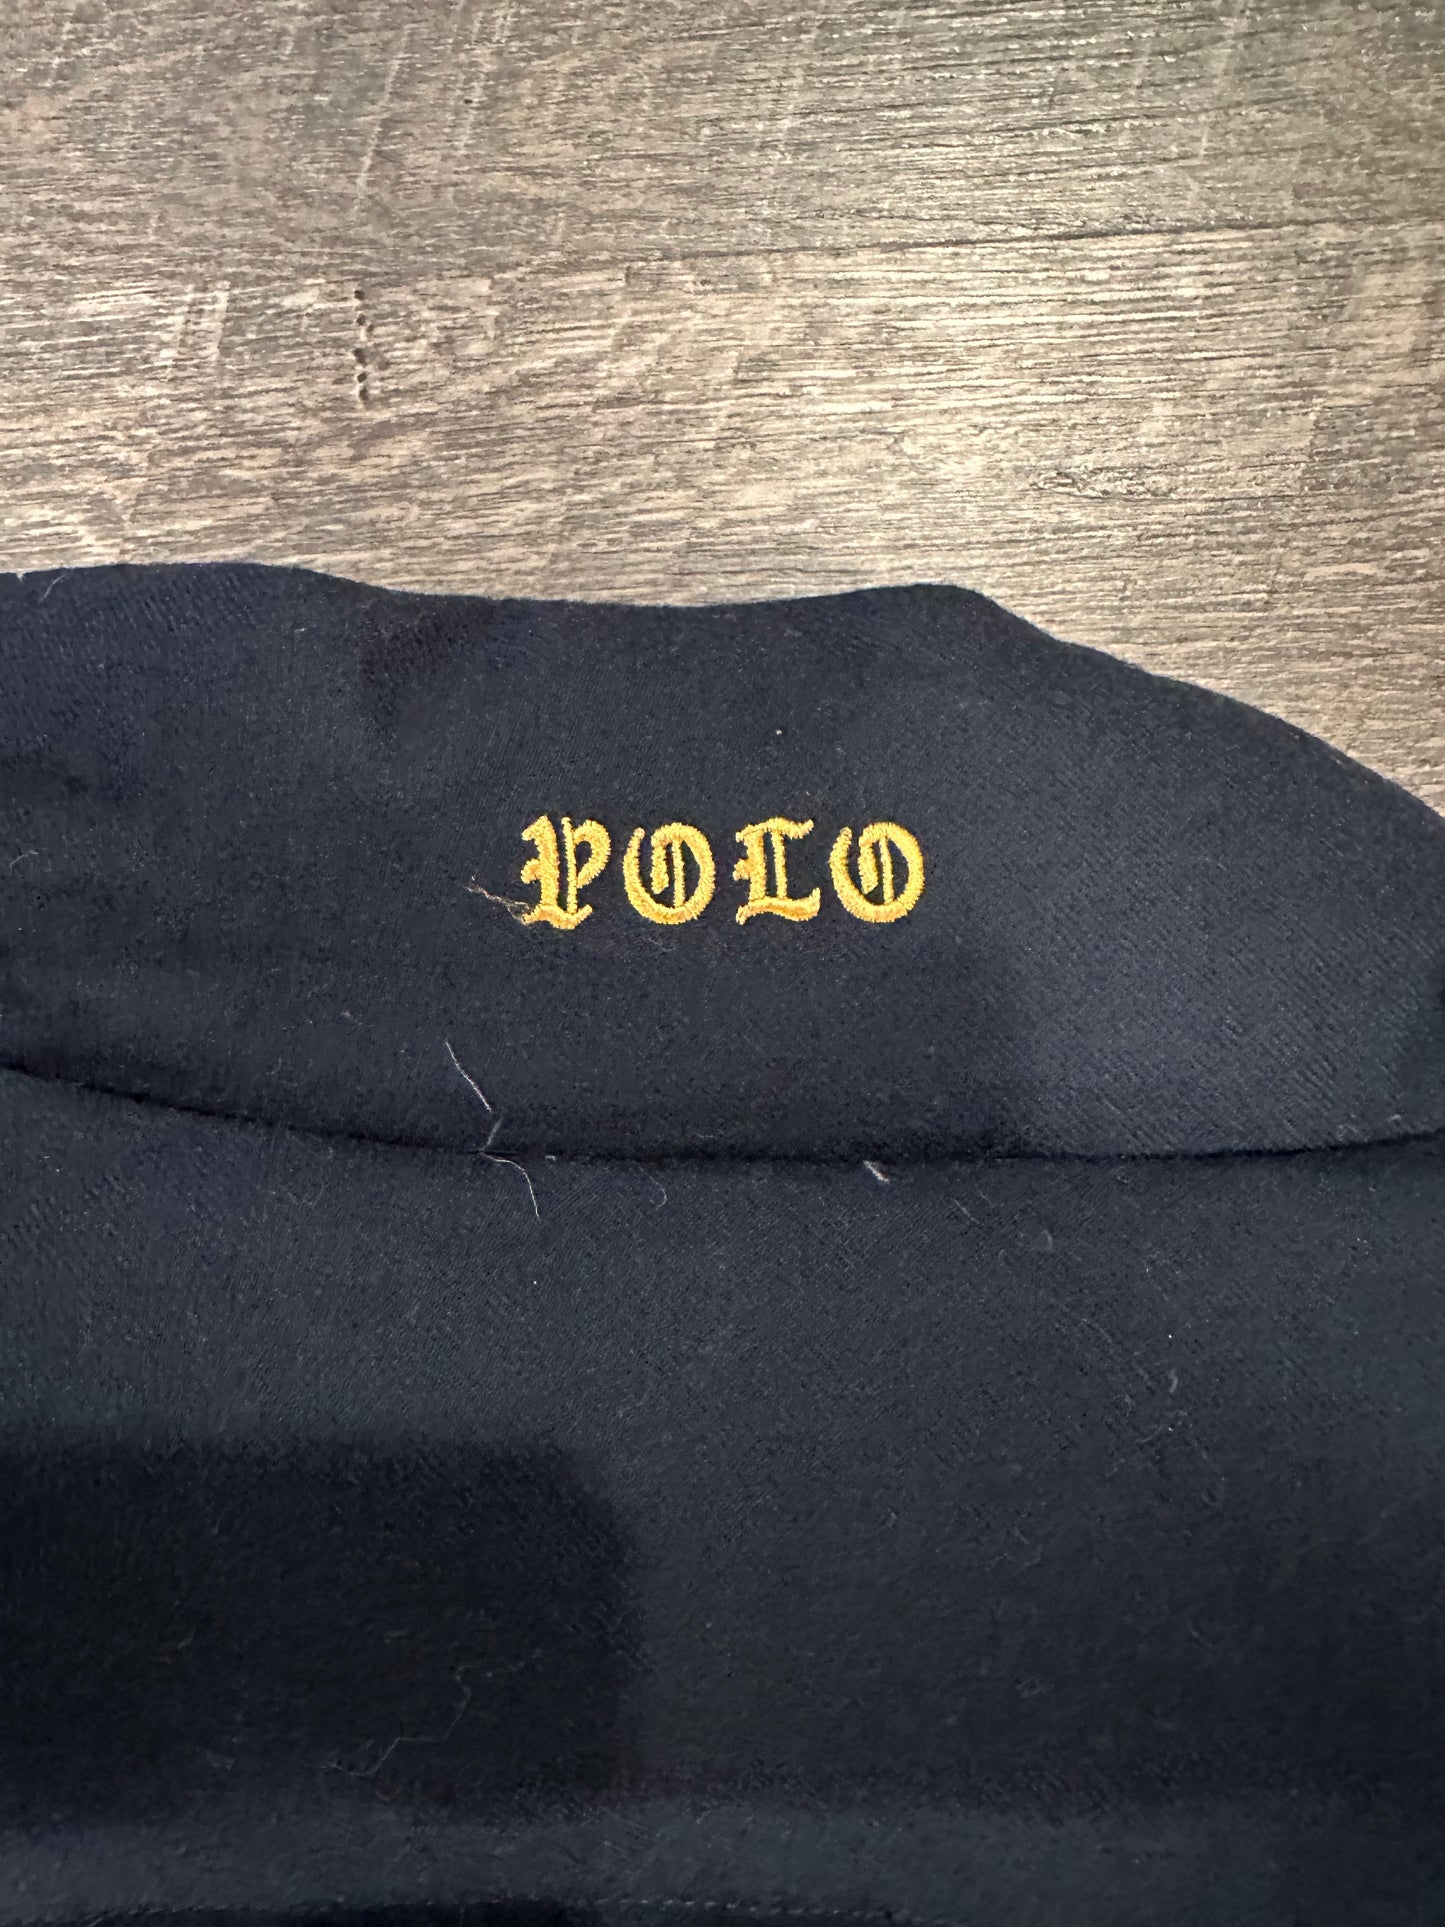 Polo Ralph Lauren Goose Down Crest Vest